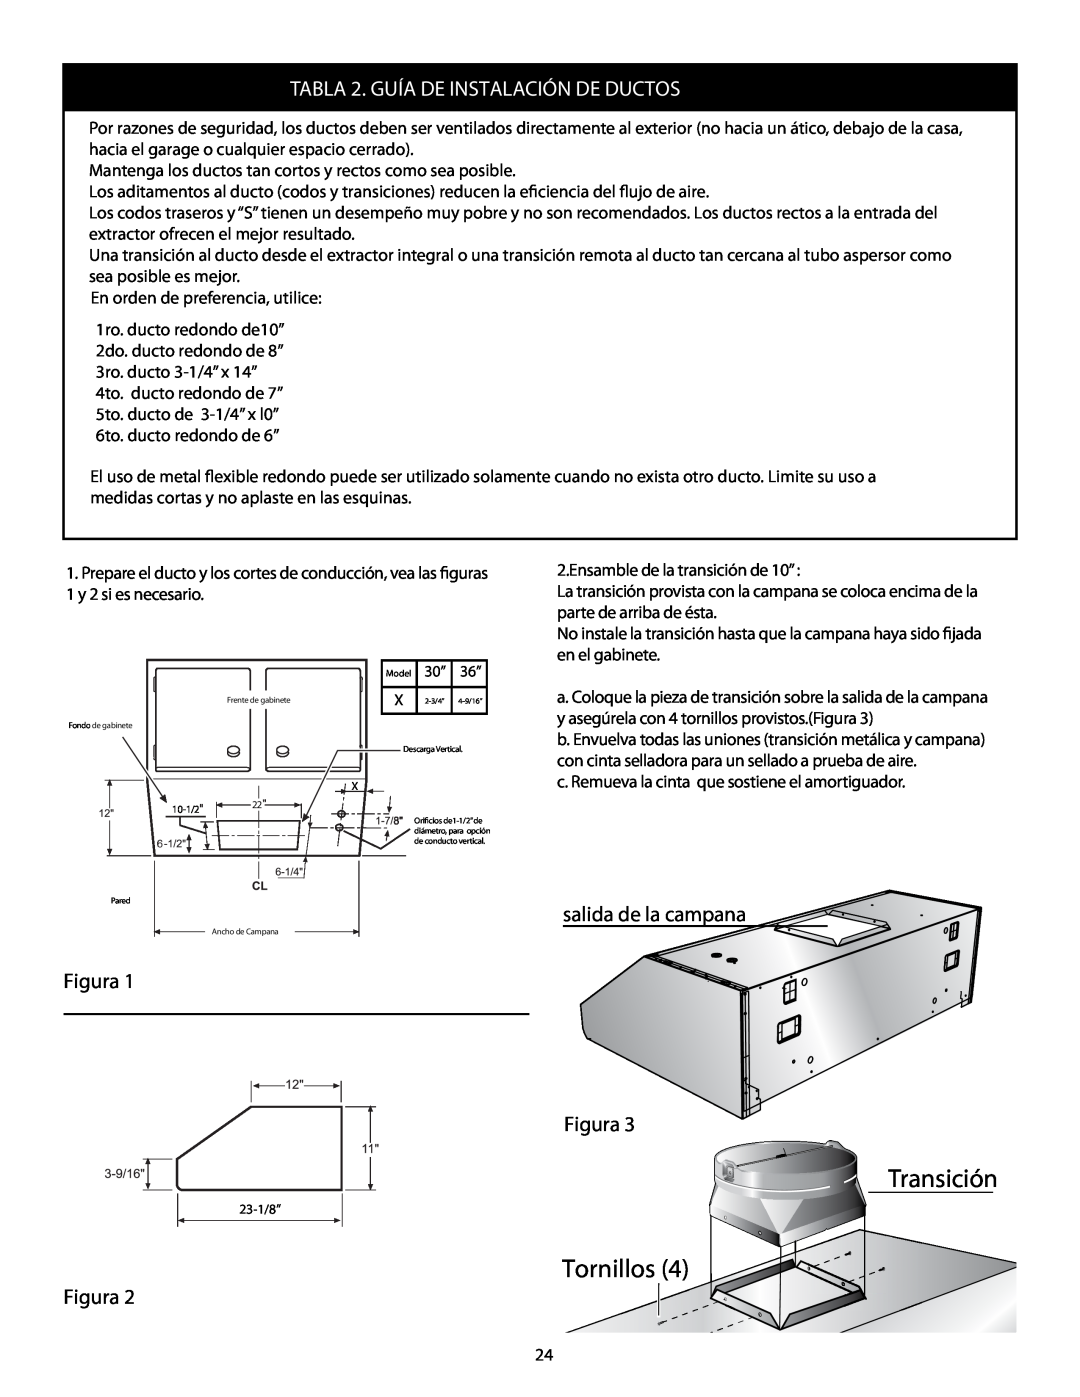 Thermador HMWB36, HMWB30 installation manual Transición Tornillos, TABLA 2. GUÍA DE INSTALACIÓN DE DUCTOS 